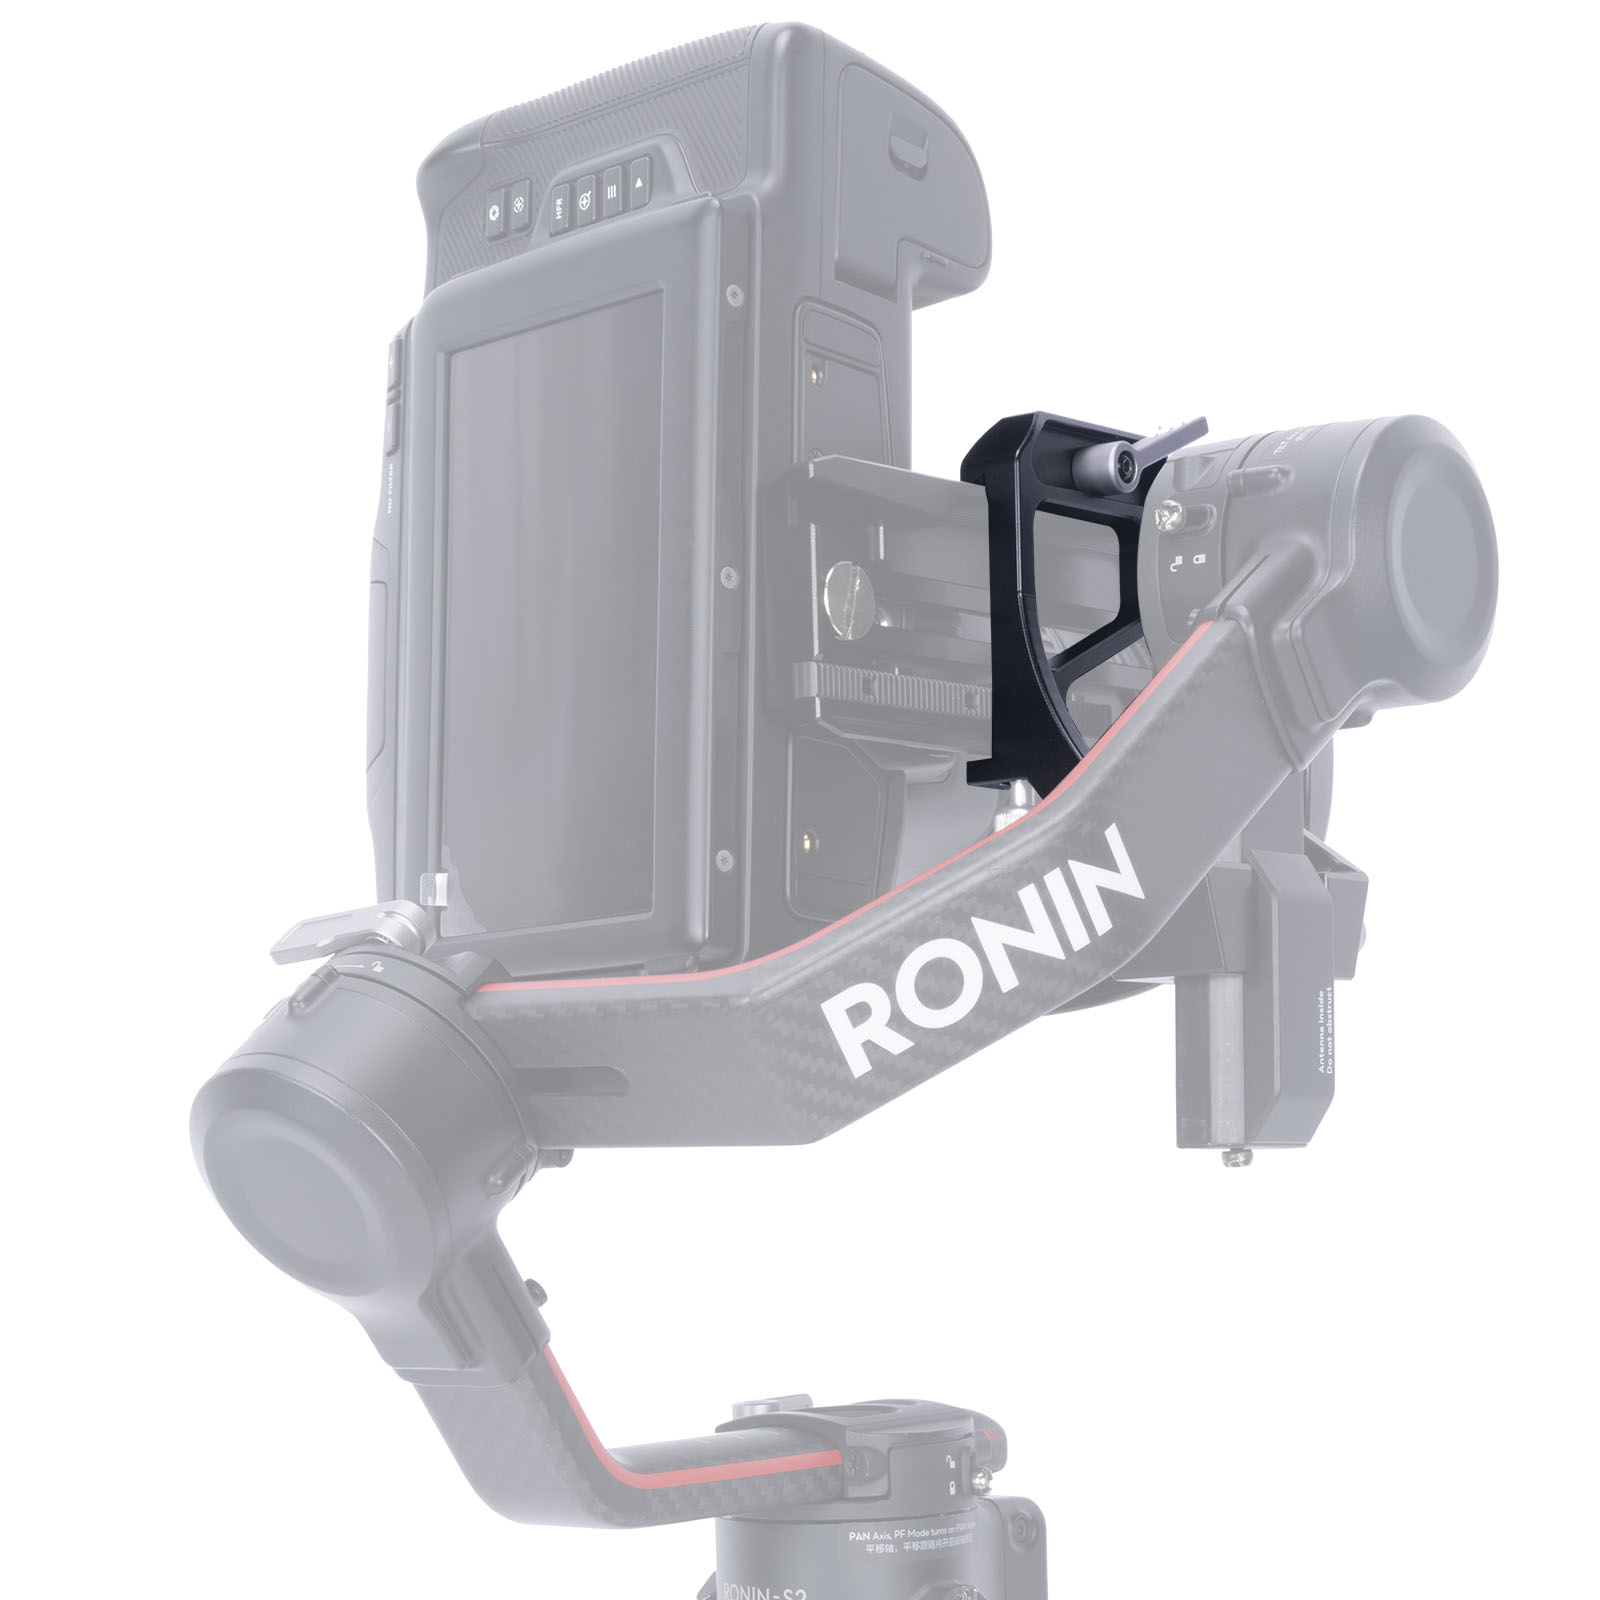 Niceyrig Vertical Shooting Adaptor Mount for DJI RoninSC/ RoninSC2 